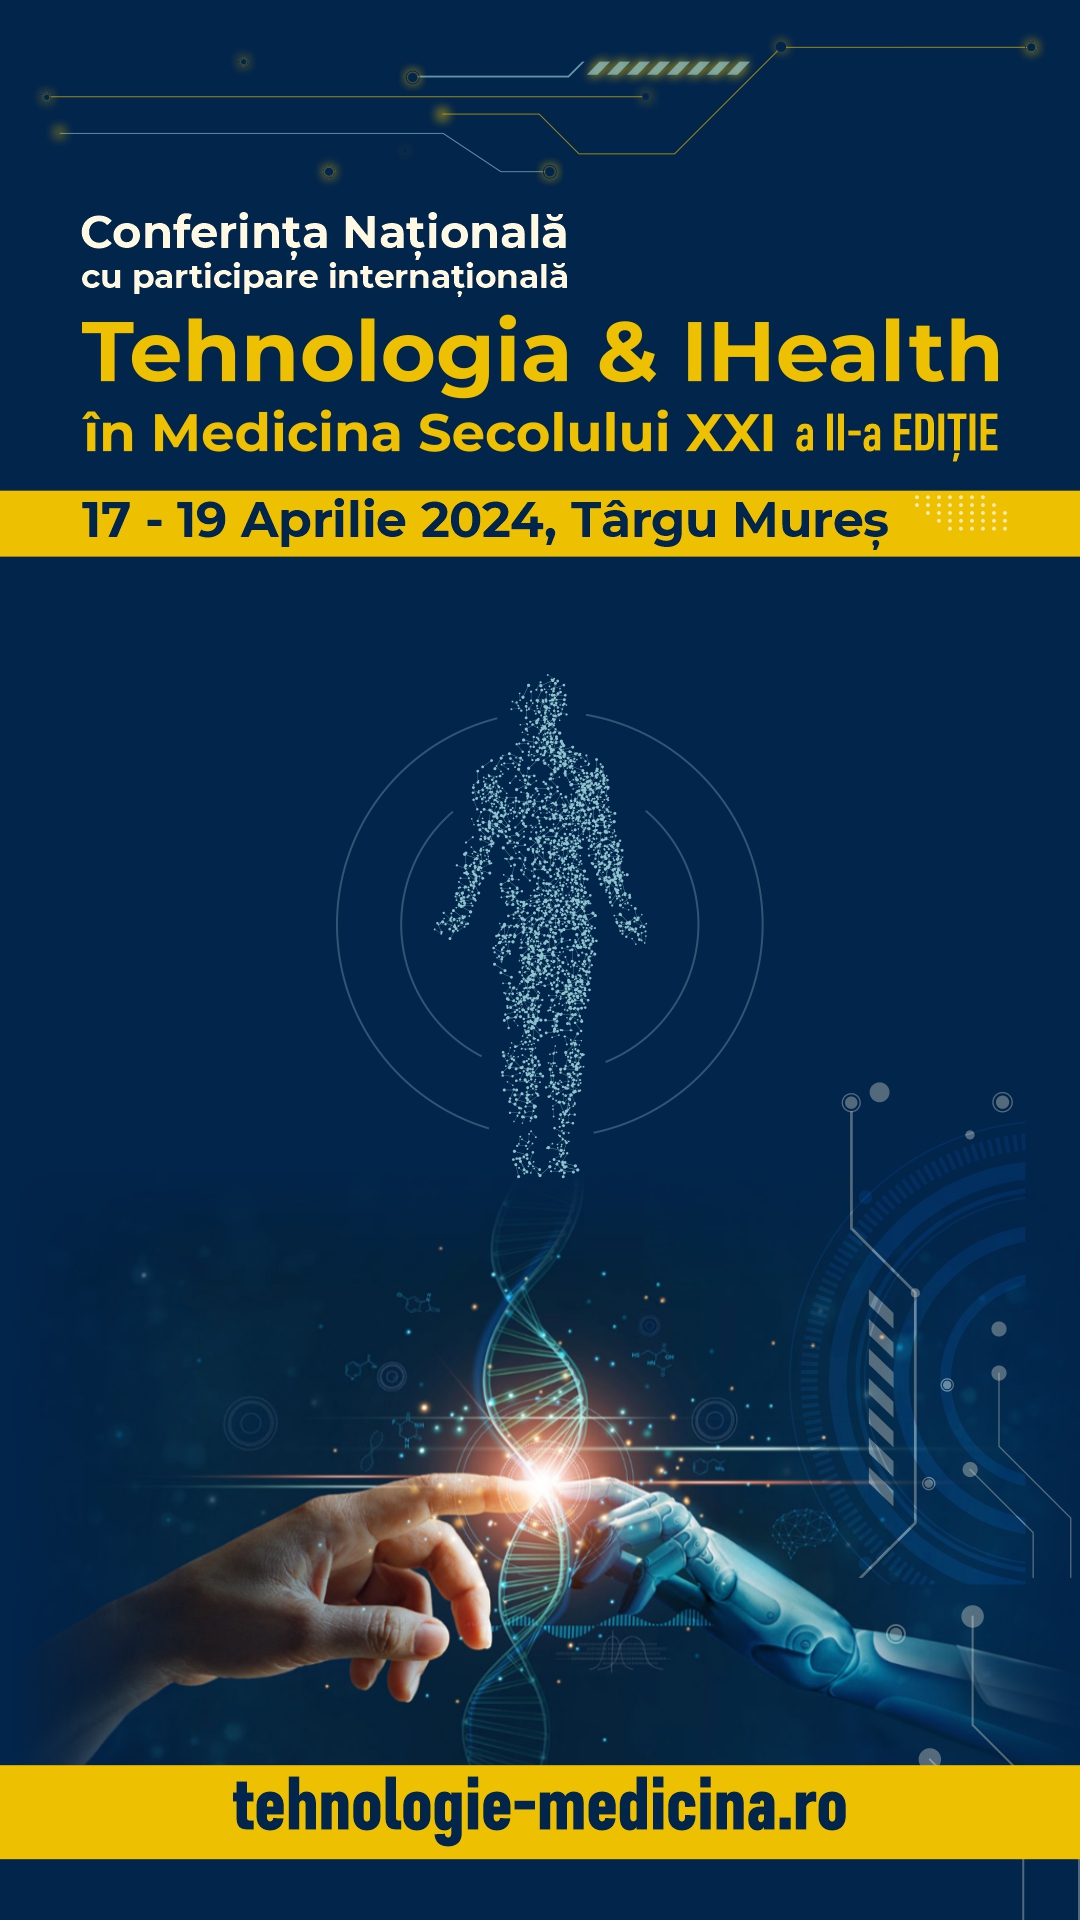 Conferința „Tehnologia & iHealth în medicina secolului XXI” va avea loc în perioada 17-19 aprilie 